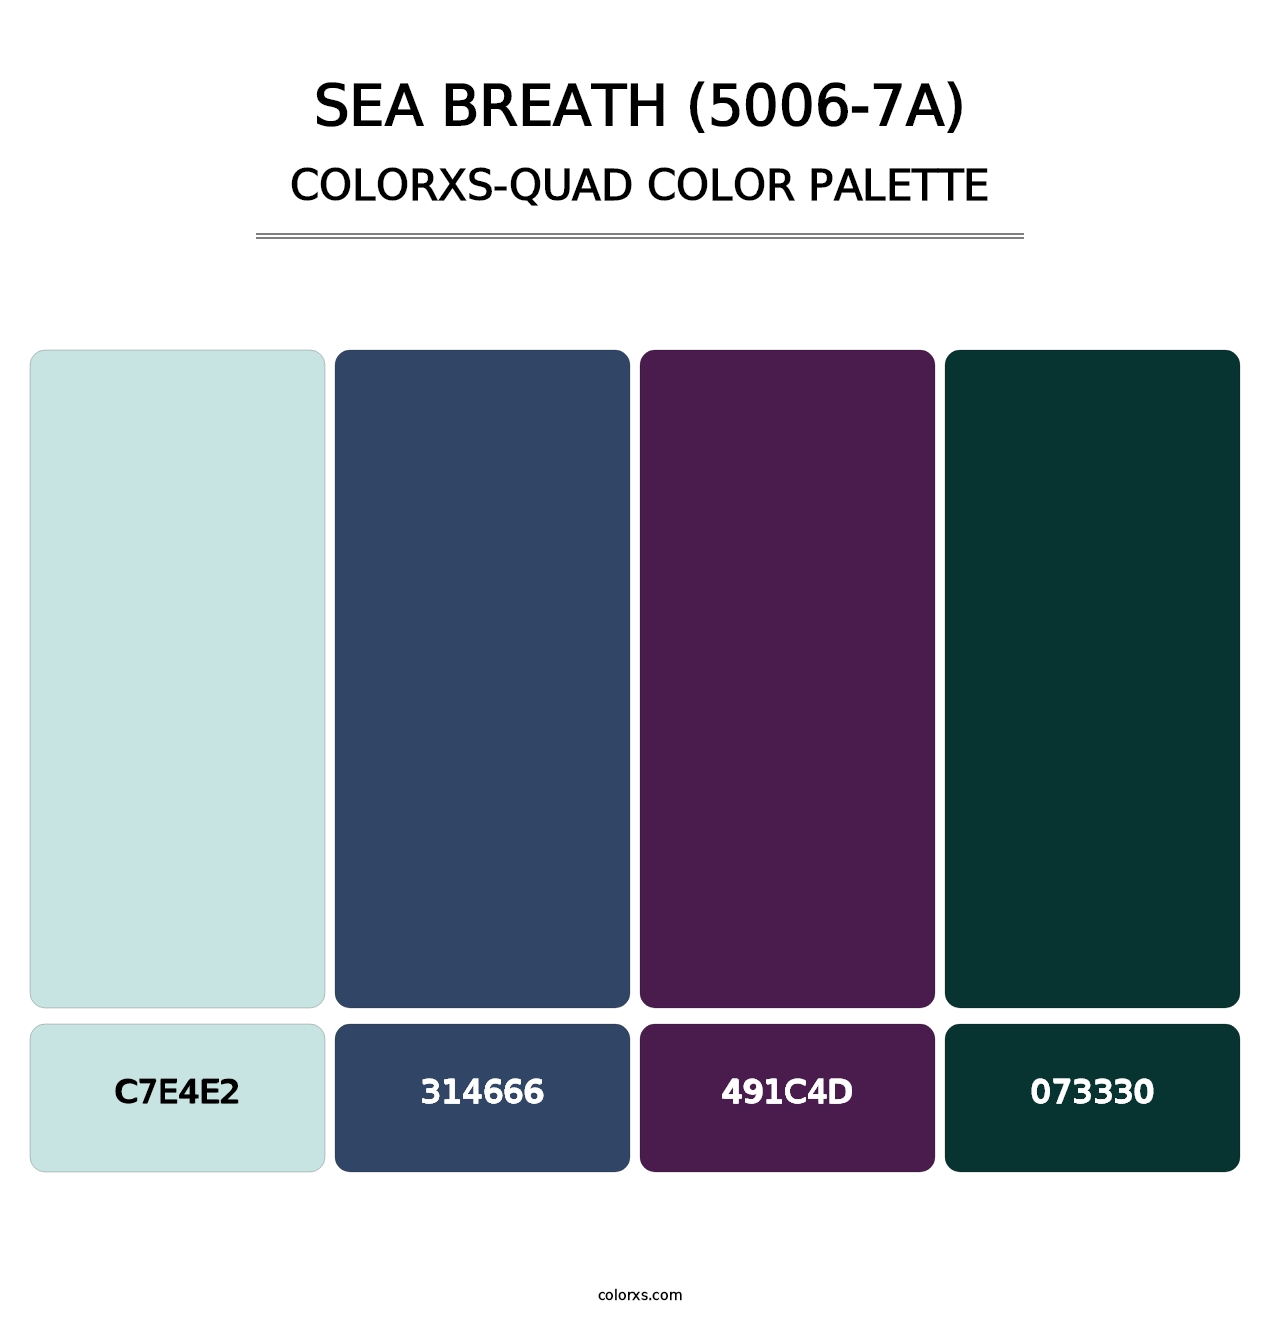 Sea Breath (5006-7A) - Colorxs Quad Palette